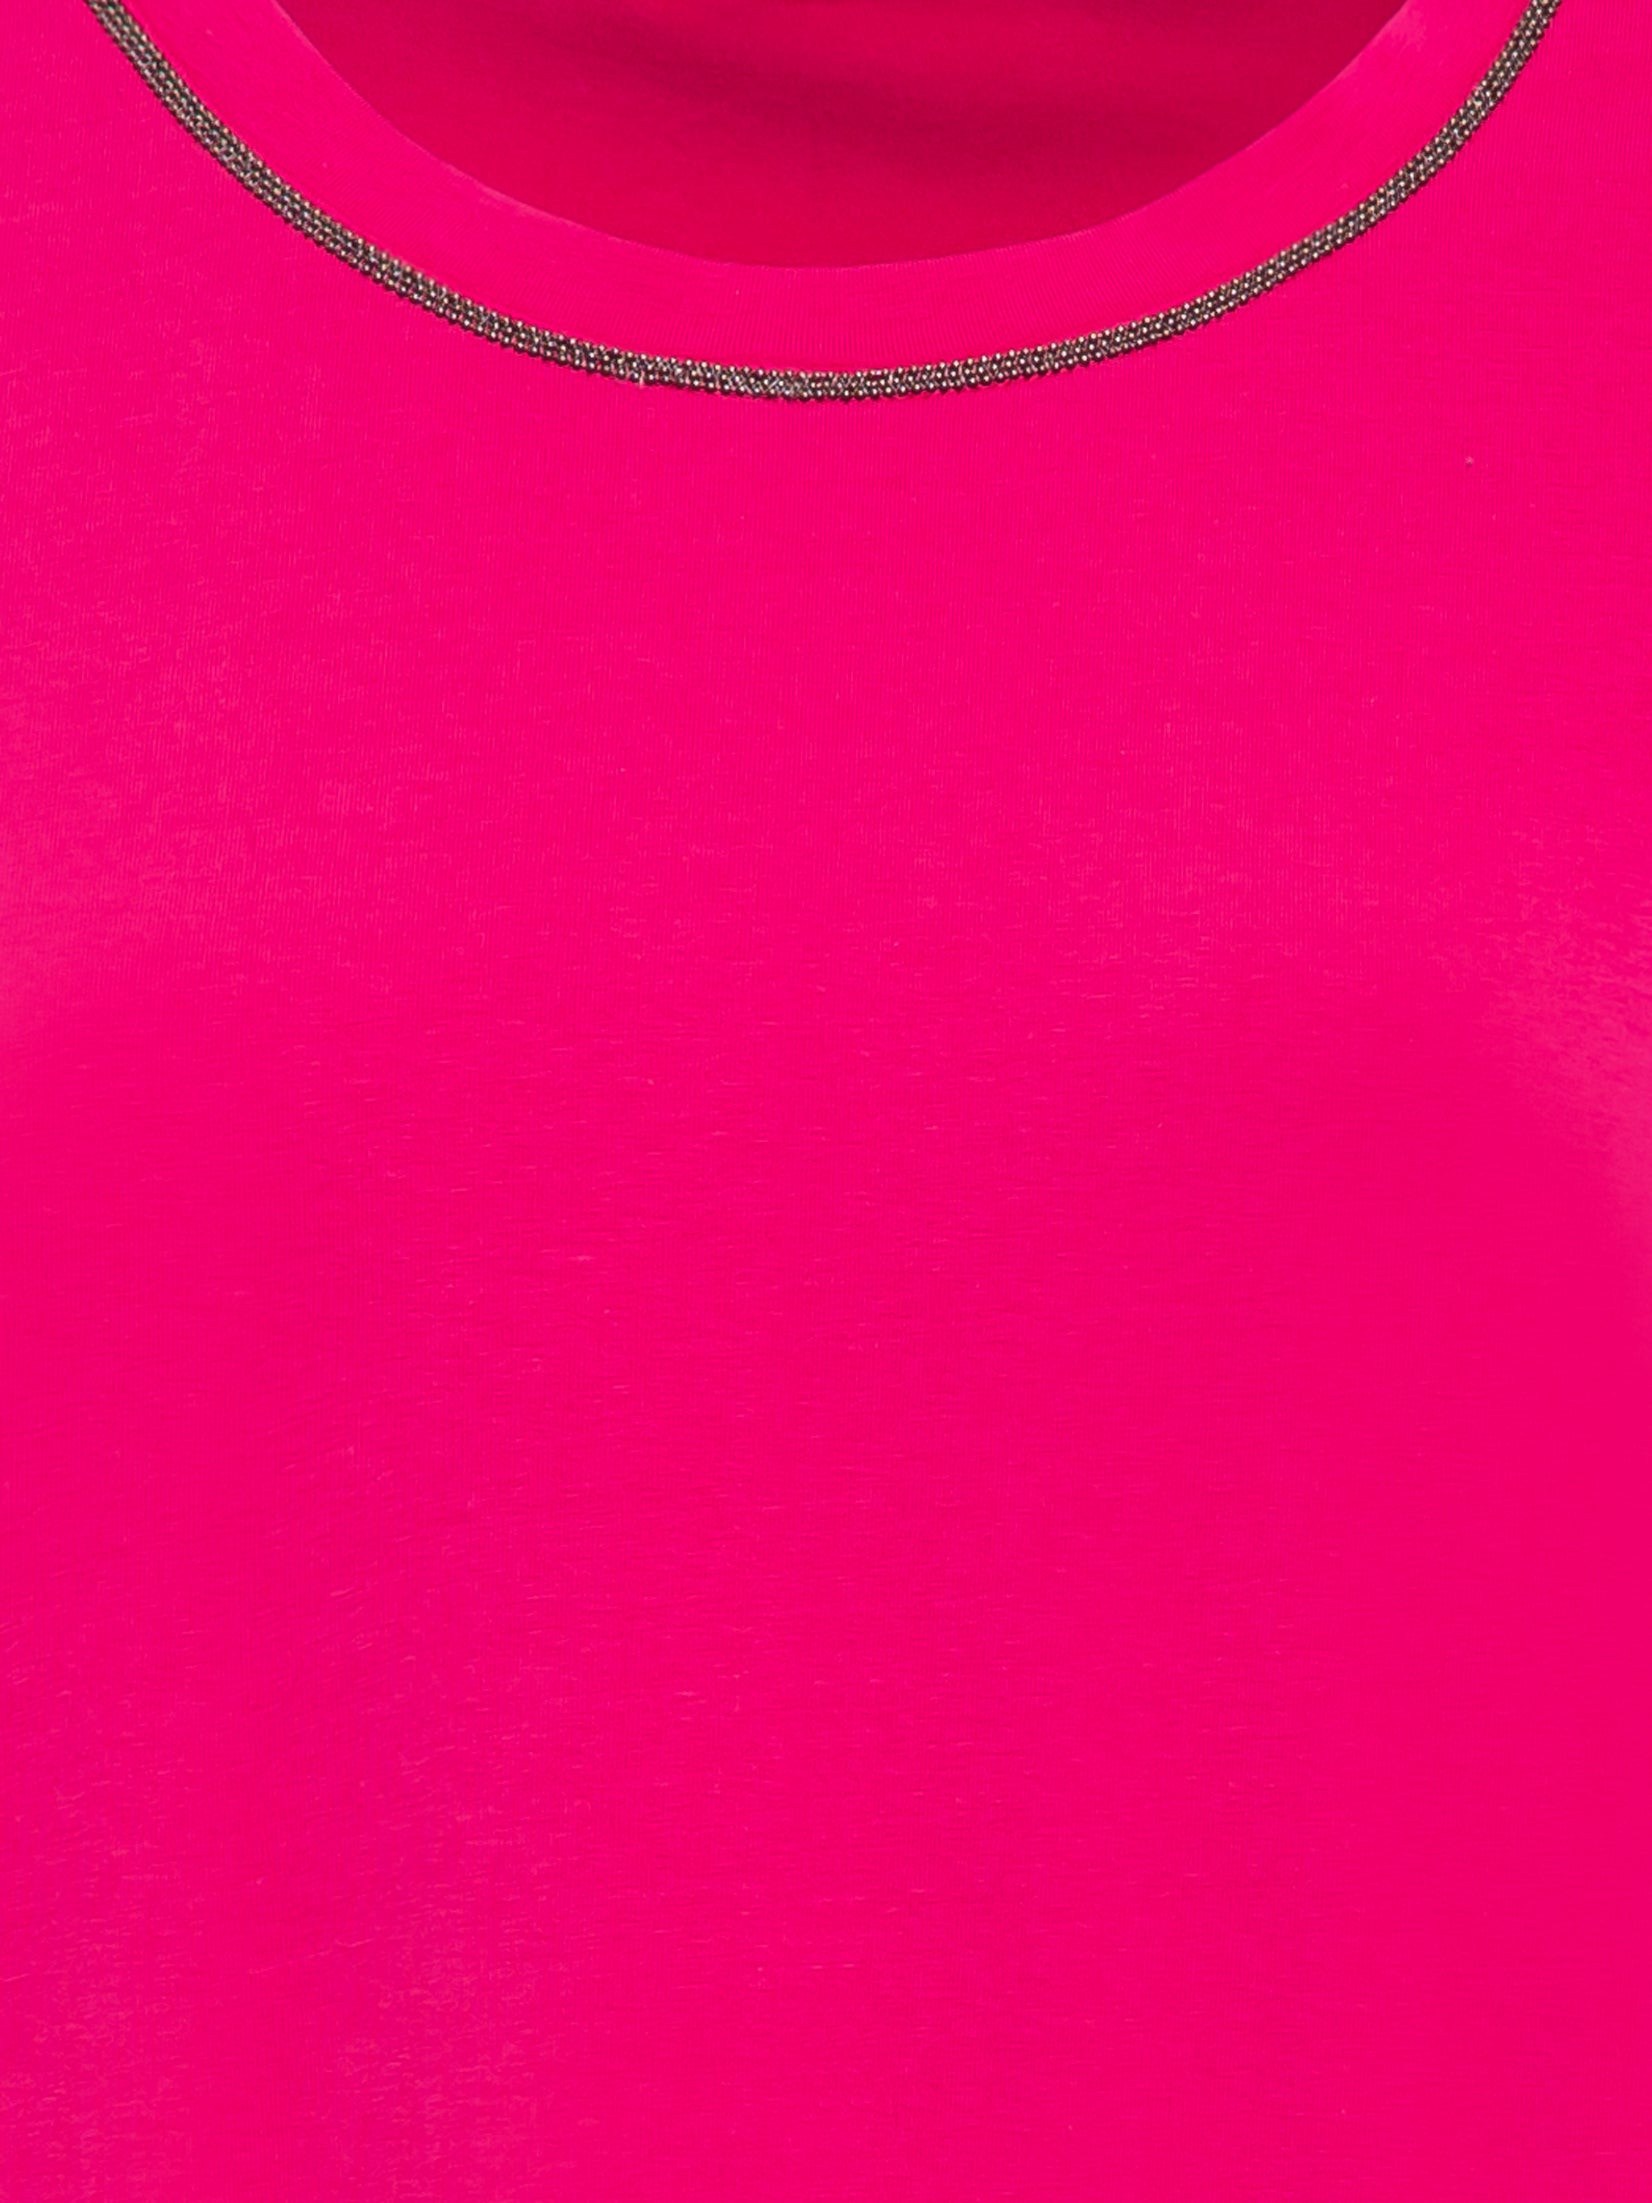 Olsen - Long Sleeve Top Pink